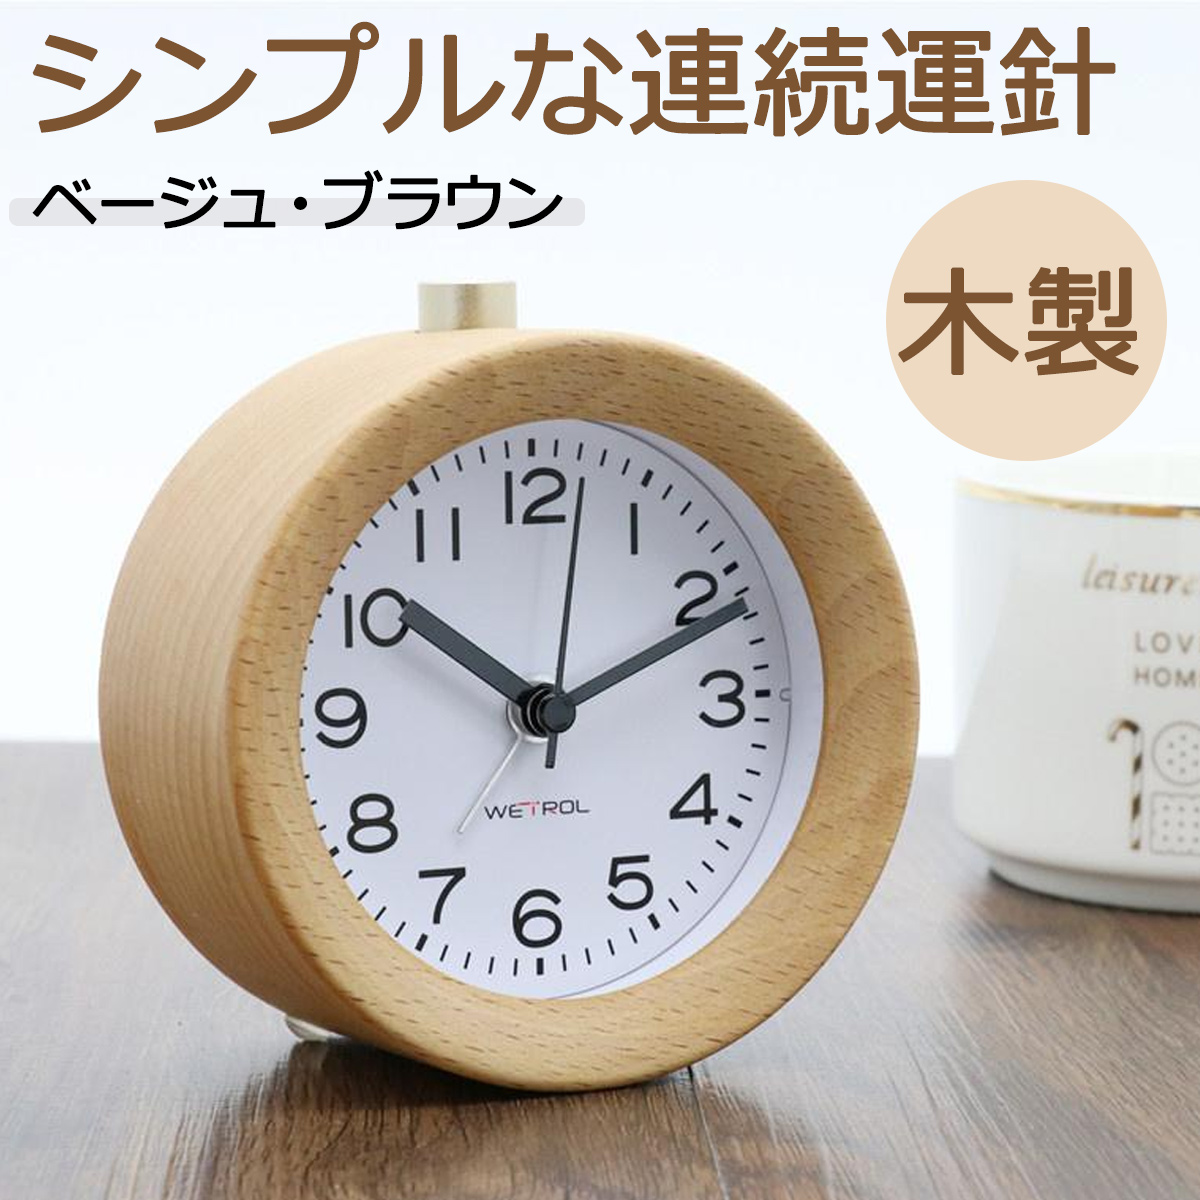 目覚まし時計 置き時計 木製 clock 2 ナチュラル アラーム 連続秒針置き時計 おしゃれ アナログ 小さい アラーム スヌーズ